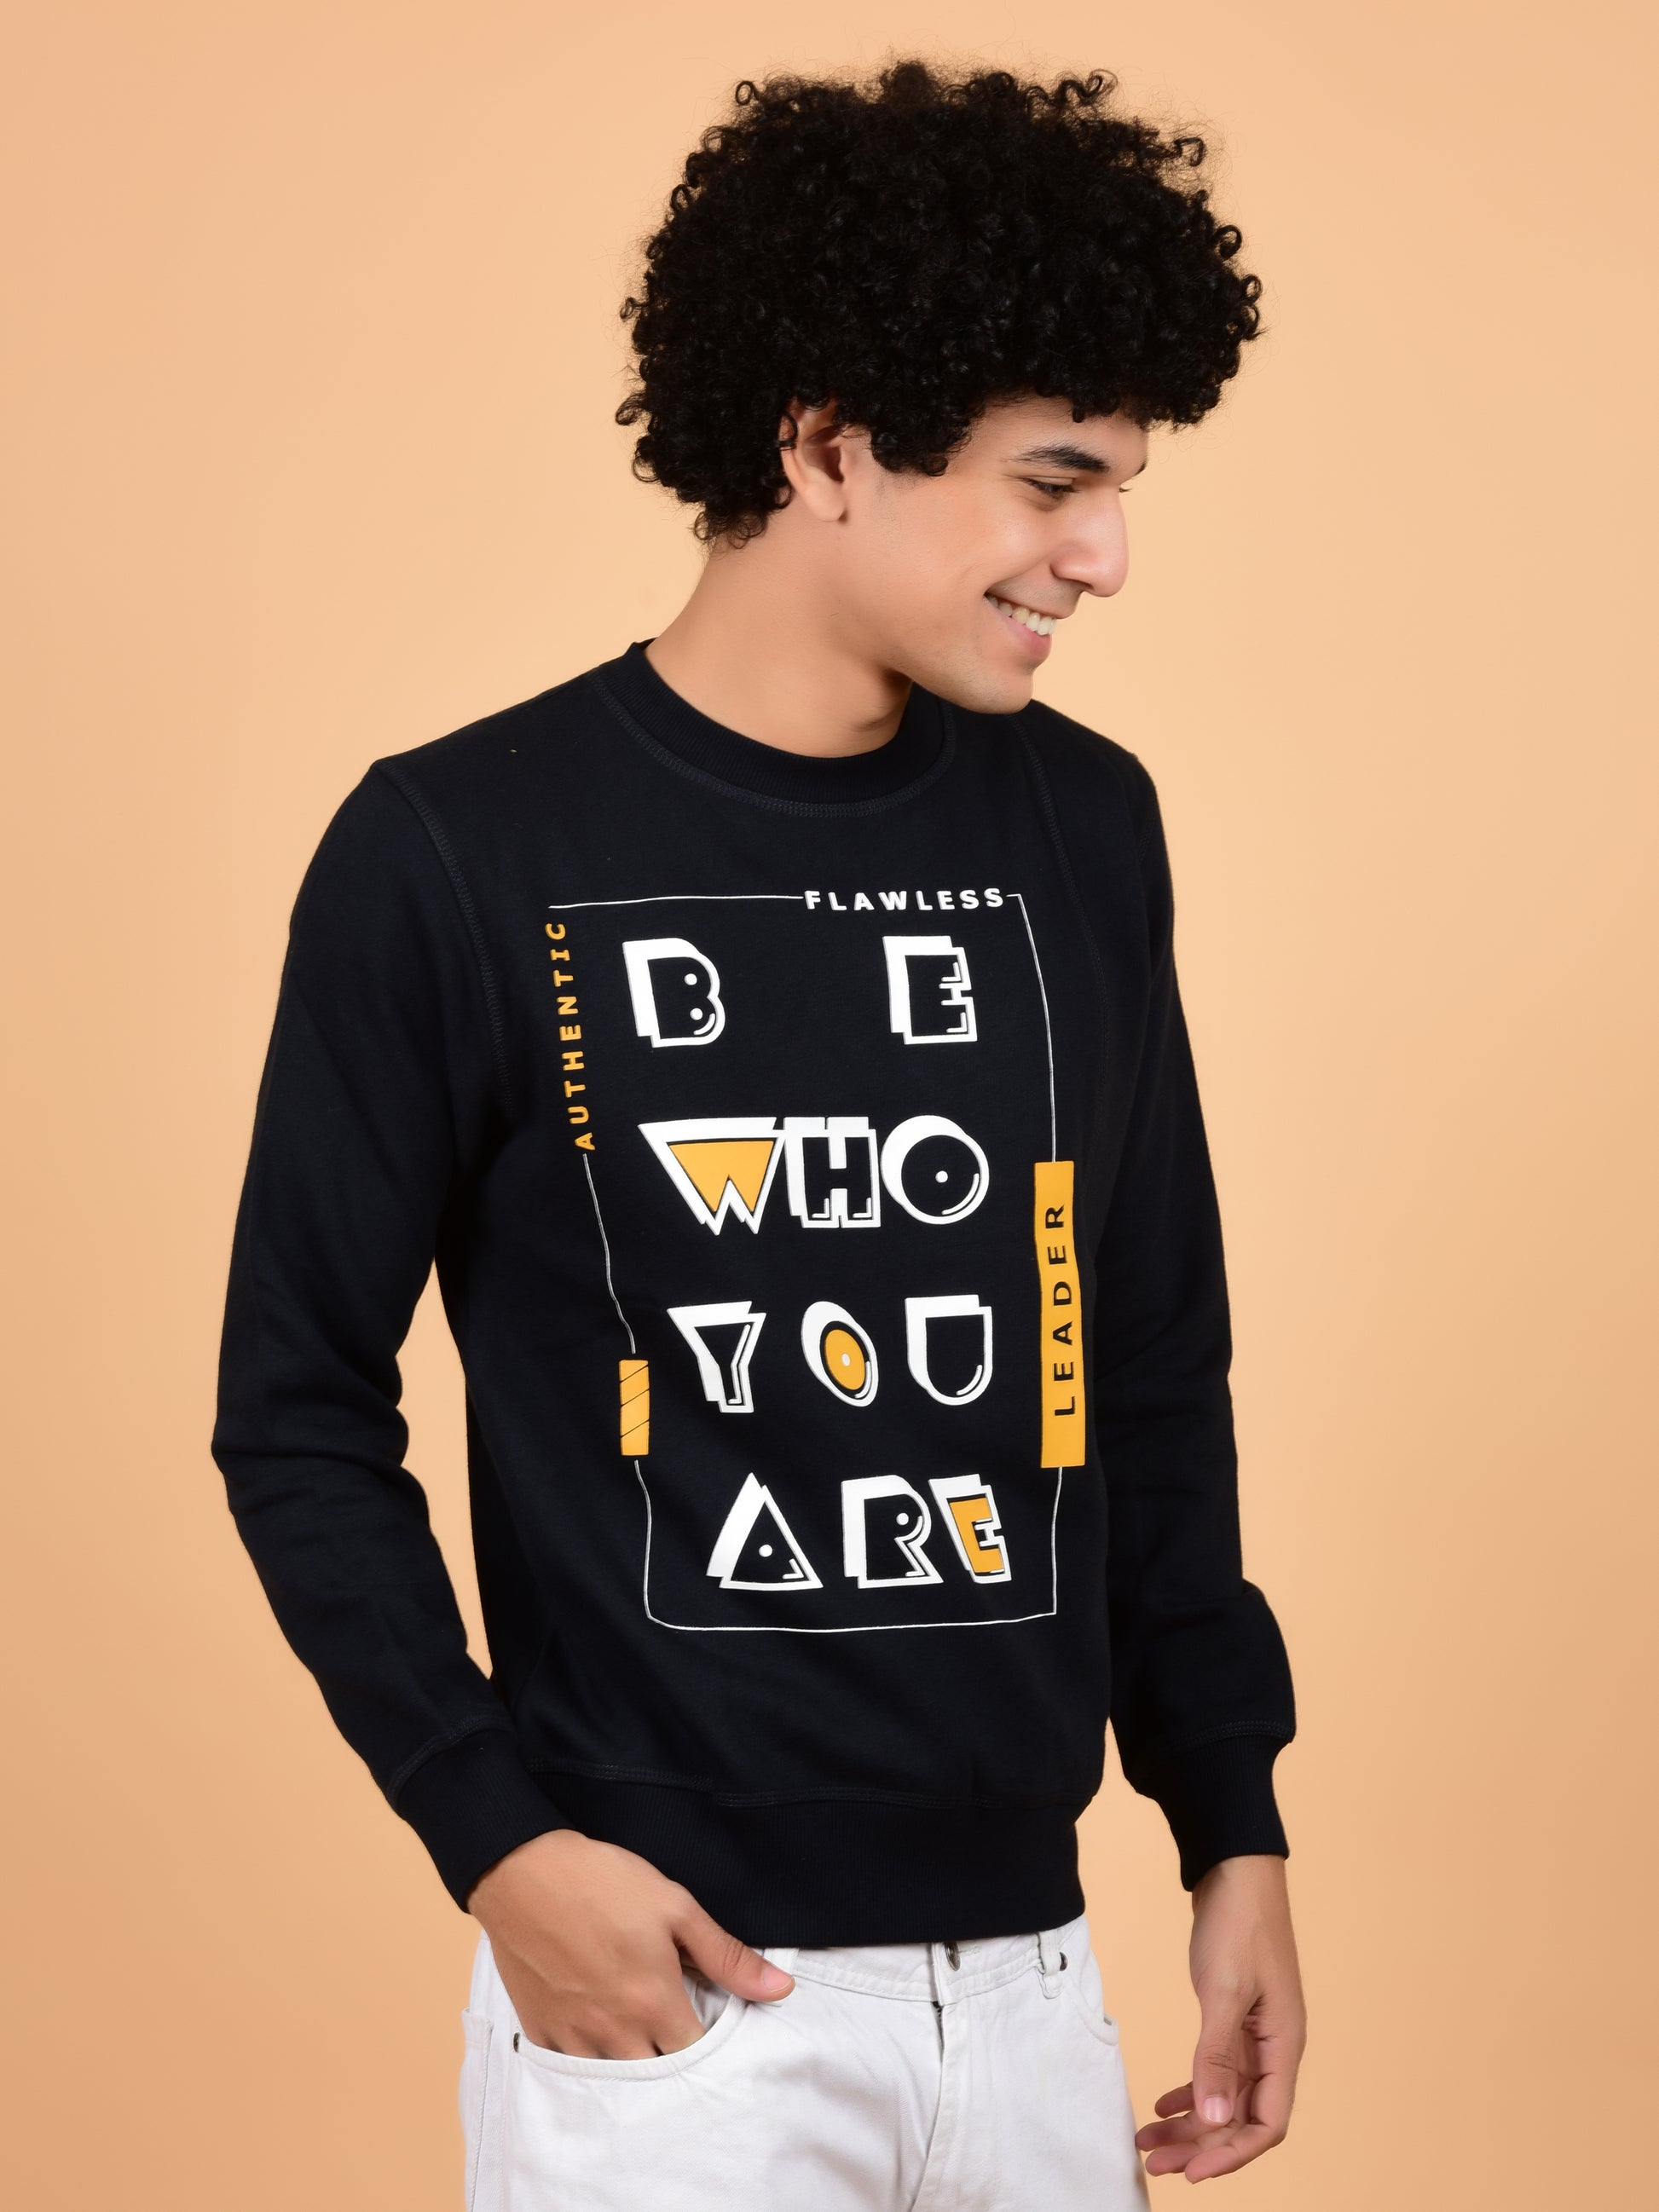 Flawless Men Typography Swag Sweatshirt Being Flawless